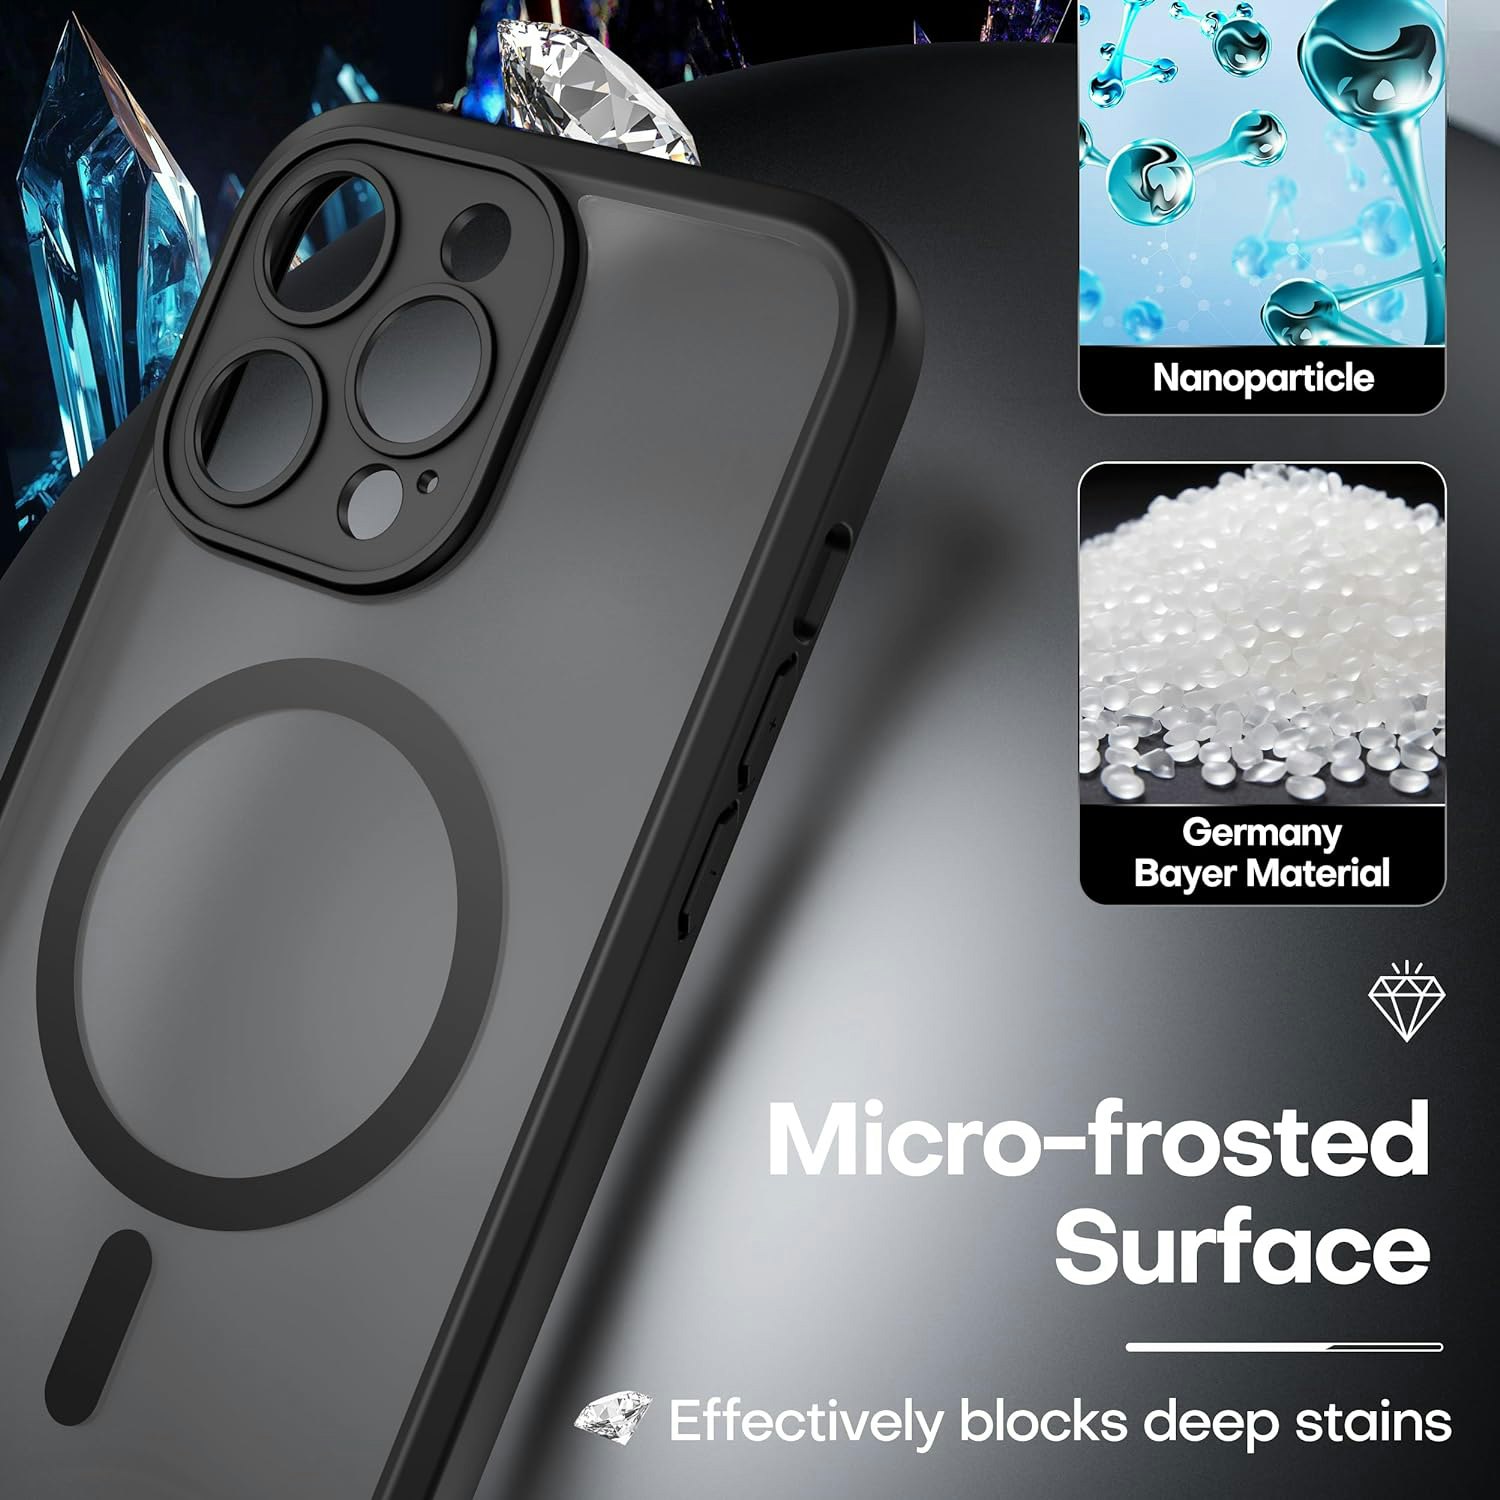 iPhone 15 Plus MagSafe silikonskal i svart färg